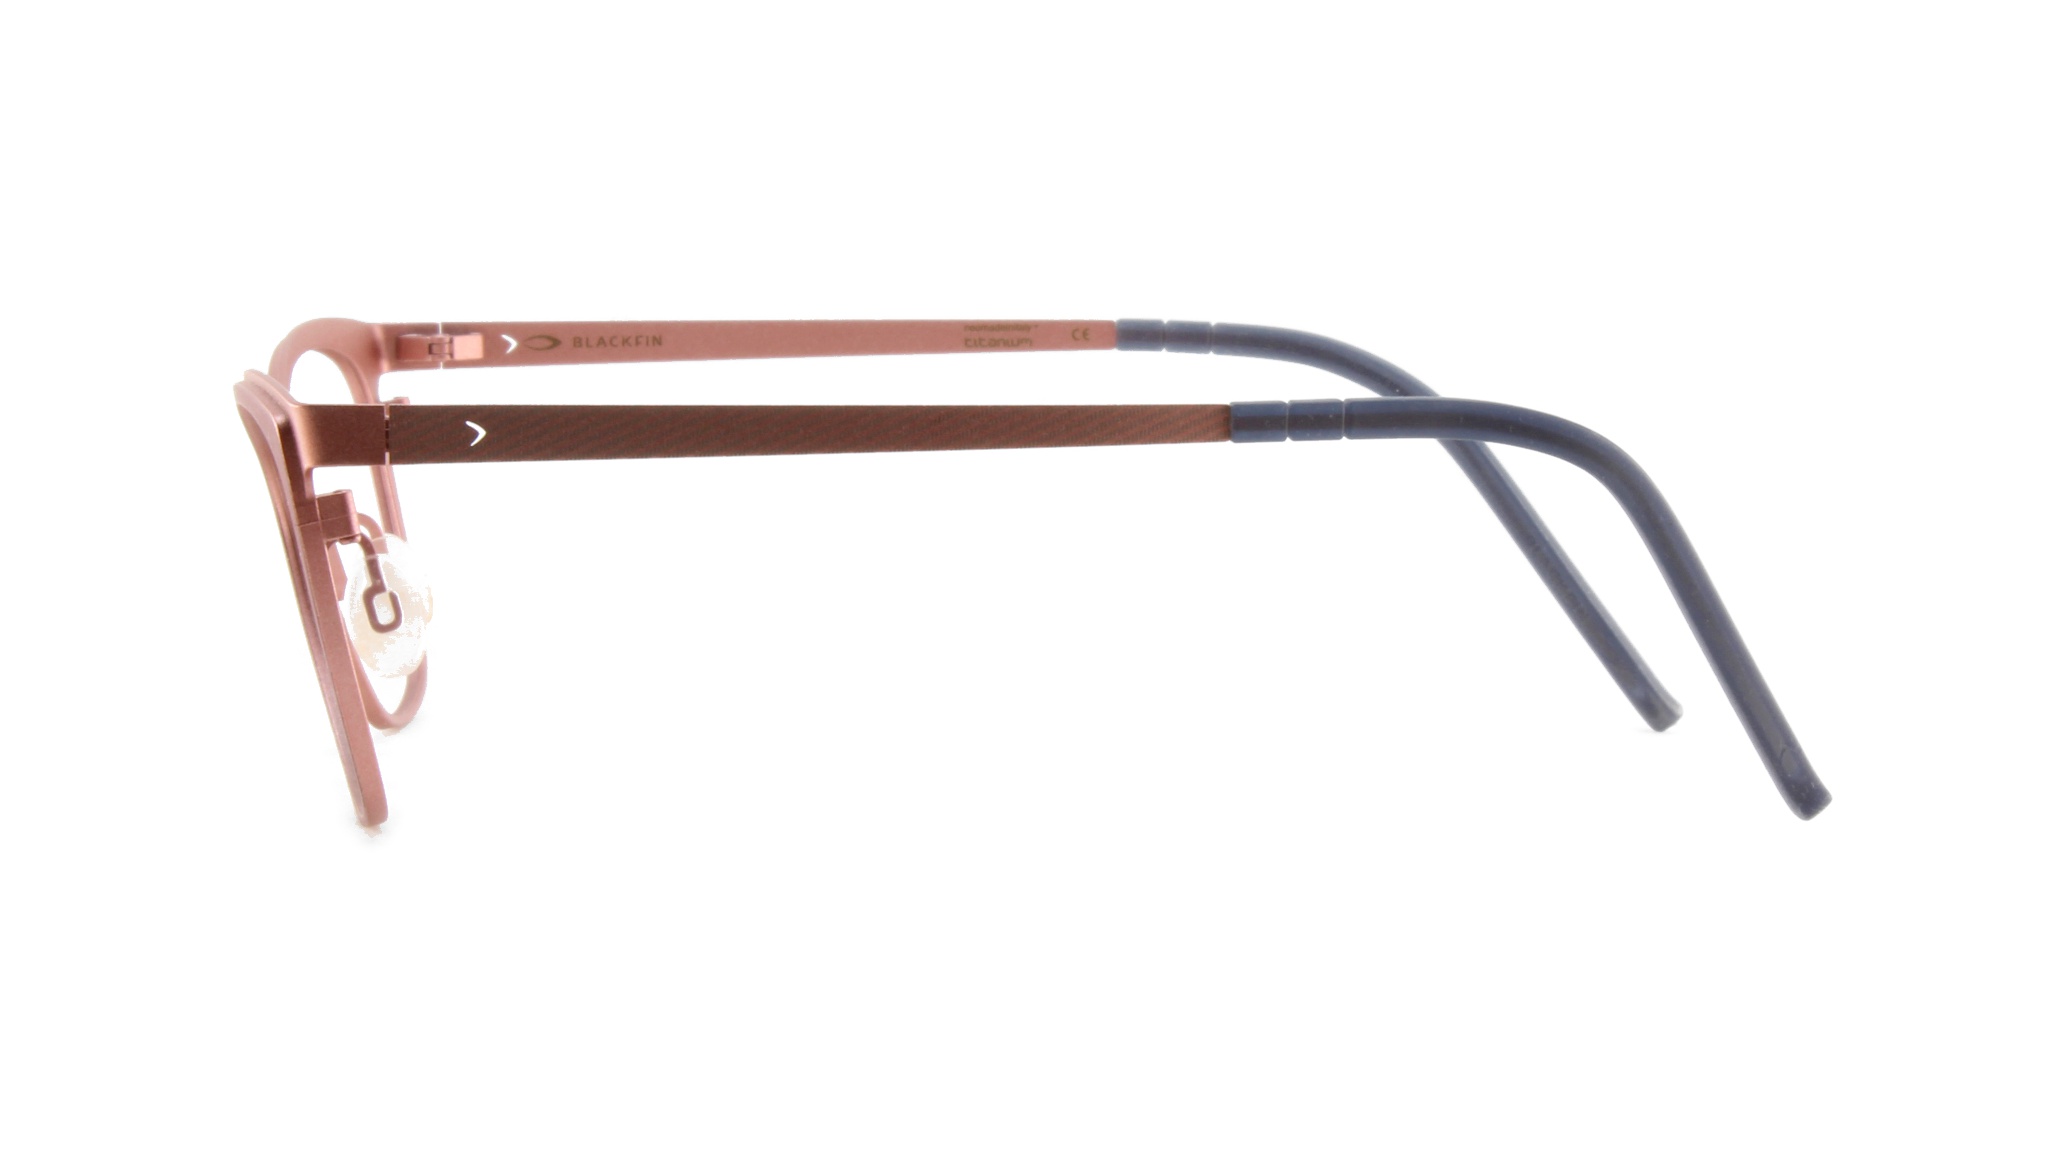 Paire de lunettes de vue Blackfin Bf759 ushuaia couleur rouge - Côté droit - Doyle